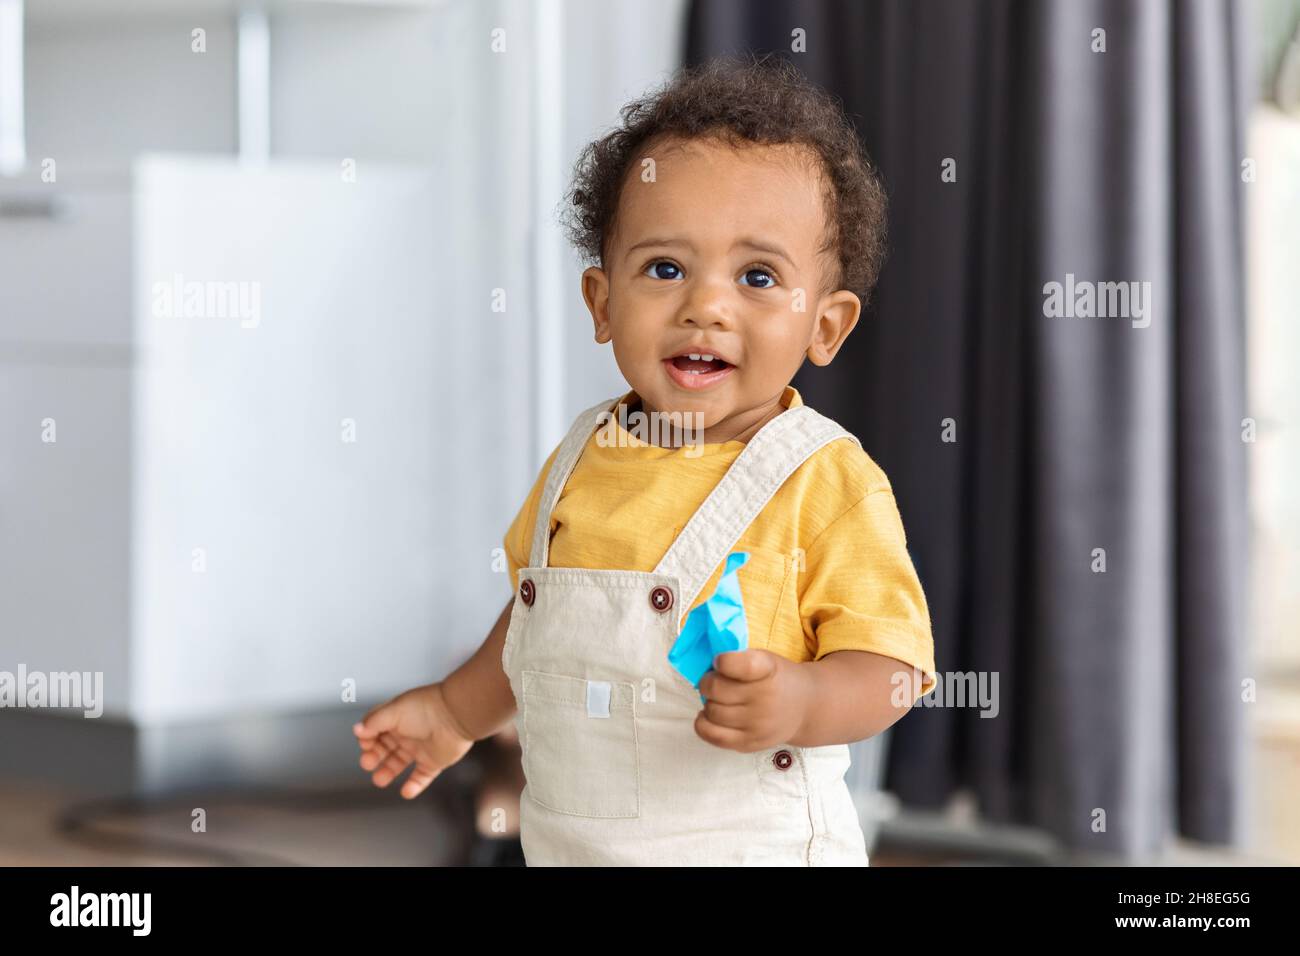 Pequeño Bebé Con El Pelo Rizado Y Ojos Azules Sonriendo Fotos, retratos,  imágenes y fotografía de archivo libres de derecho. Image 45676196